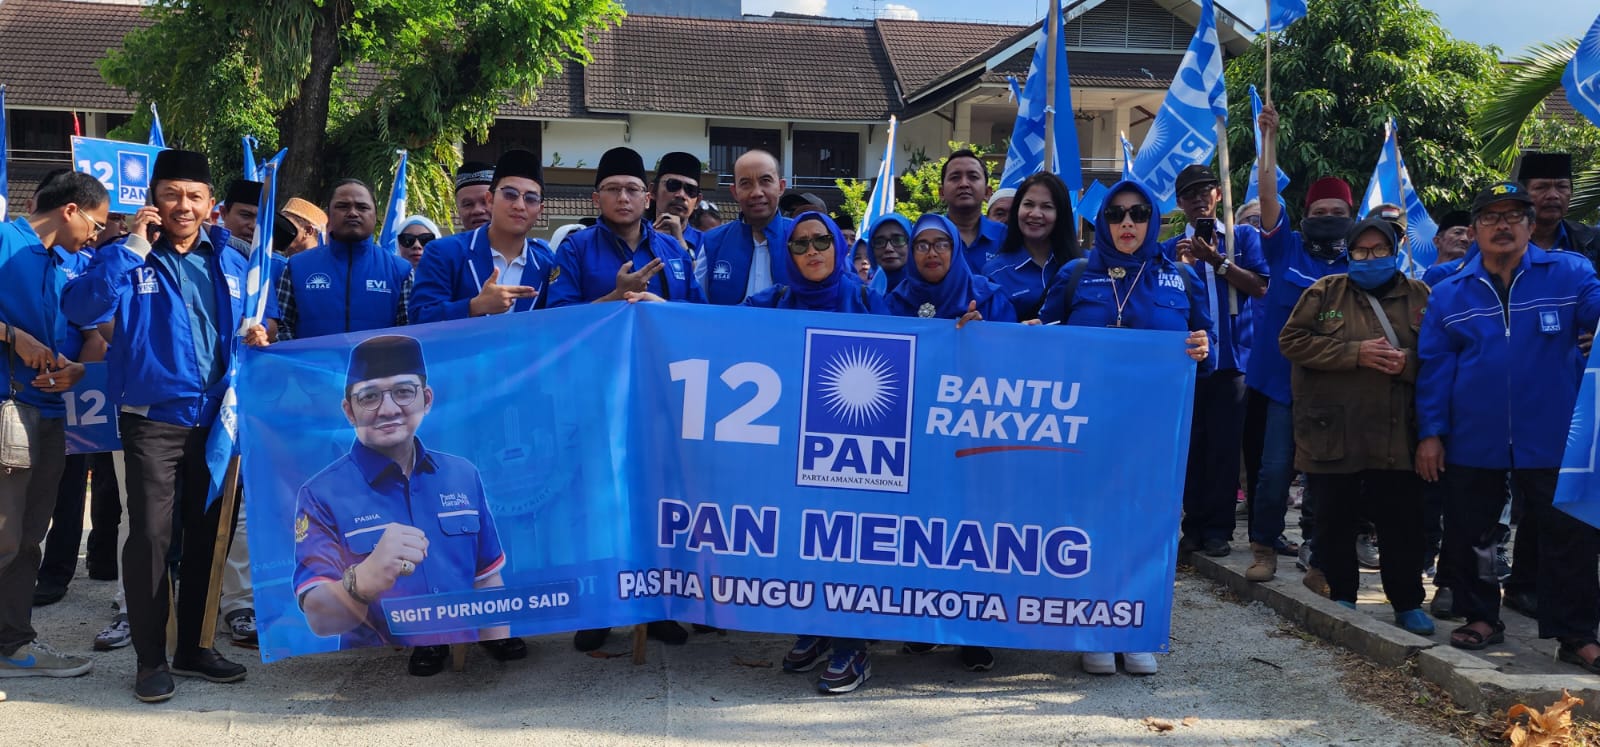 PAN Kota Bekasi melakukan longmarch ke KPU Kota Bakasi saat pendaftaran Bacaleg sekaligus membawa spanduk Pasha Ungu yang dijagokan pada Pilkada 2024. Foto: Gobekasi.id